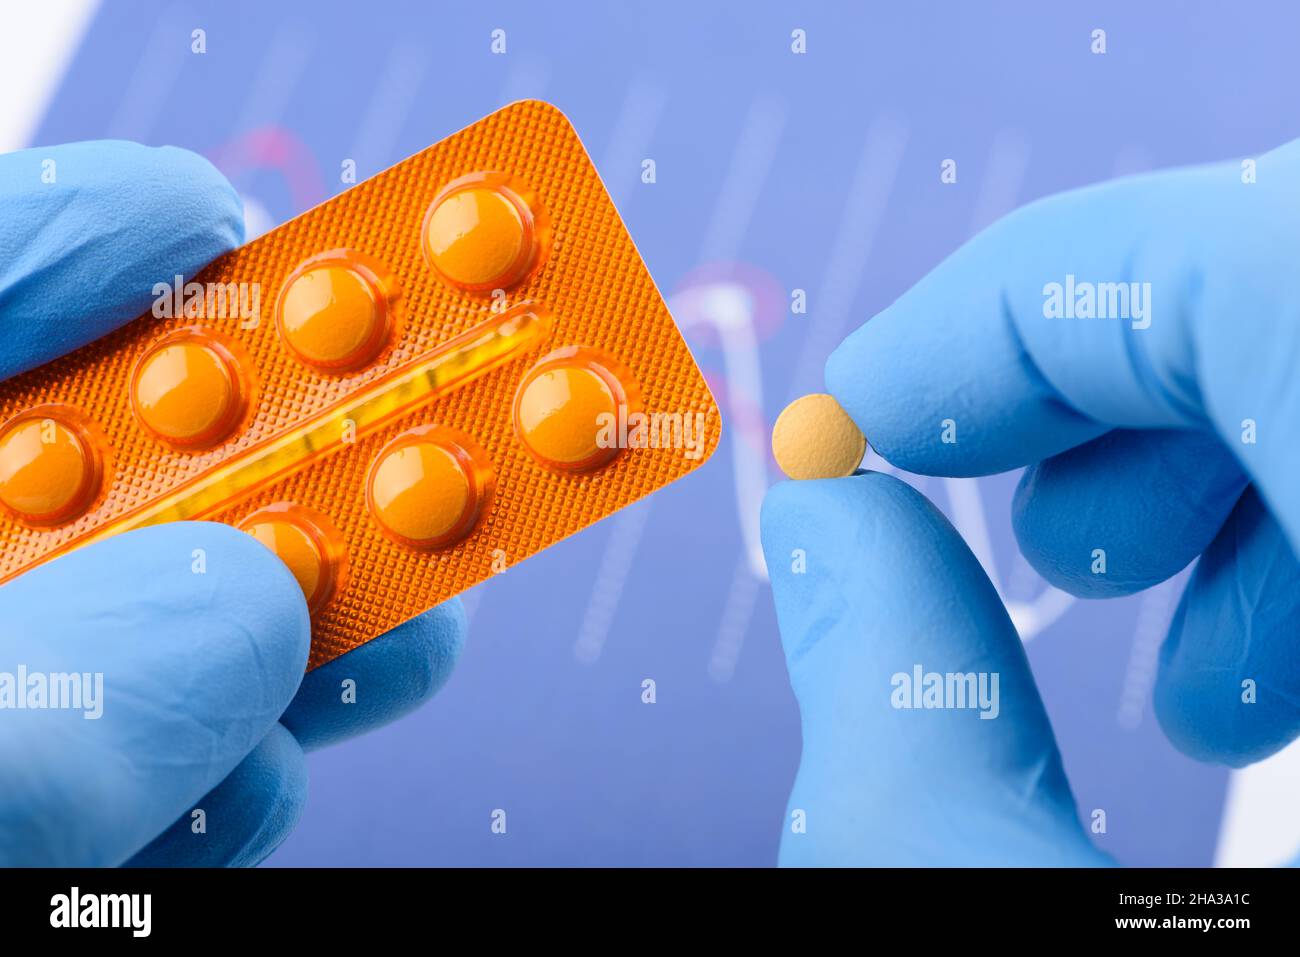 Il tuo infermiere: la pillola anticoncezionale